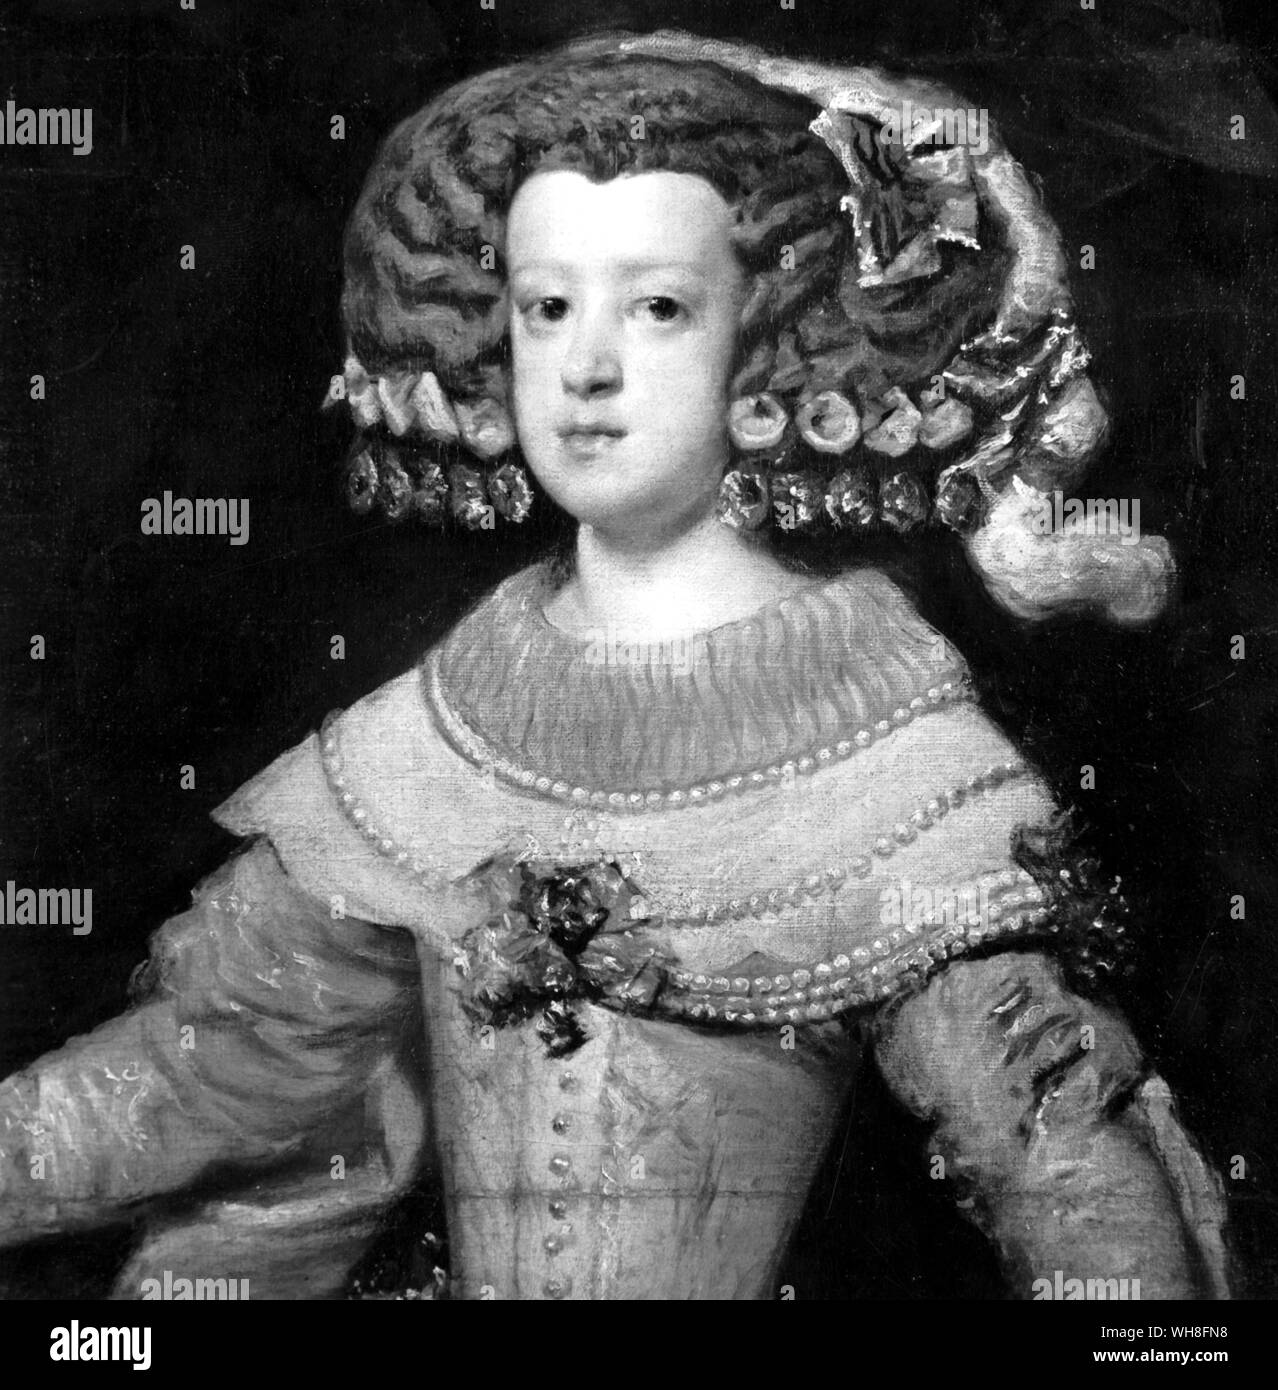 Marie Therese als Infantin von Diego Velázquez, (1599-1660) Spanischer Barock Maler. Maria Theresia von Spanien (Französisch: Marie Thérèse) (1638-1683), Königin von Frankreich als Frau von Ludwig XIV. von Frankreich, wurde an der Escorial geboren als Tochter von Philipp IV. von Spanien und der Elisabeth von Frankreich (1602-1644). . . . . . . Stockfoto